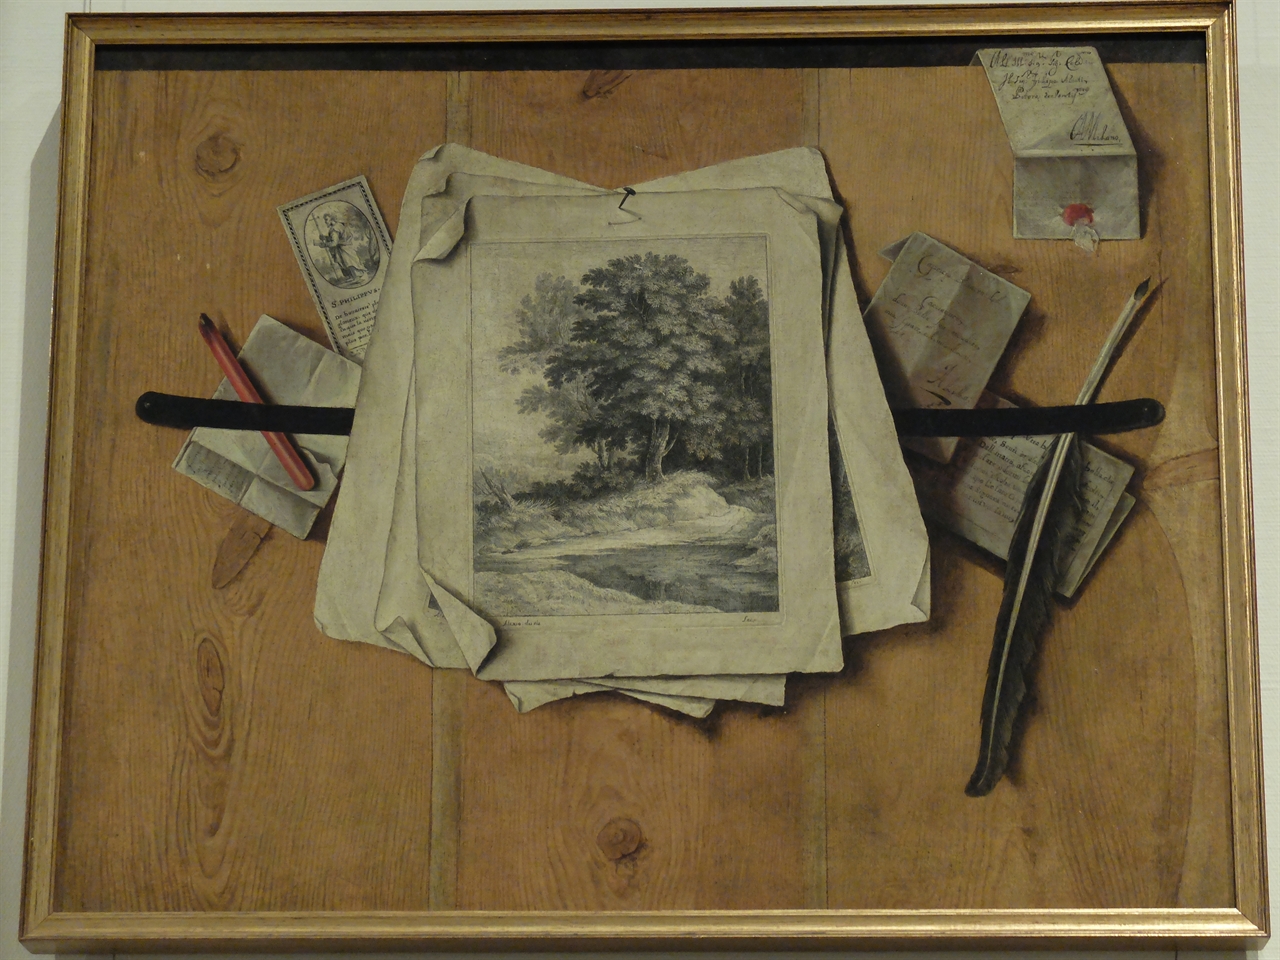 필리포 아비아티, '인쇄물 트롱프뢰유', 밀라노 스포르체스코 성. 실물과 같은 정도의 철저한 사실적 묘사를 바탕으로 한 ‘속임수 그림’, 트롱프뢰유입니다. 